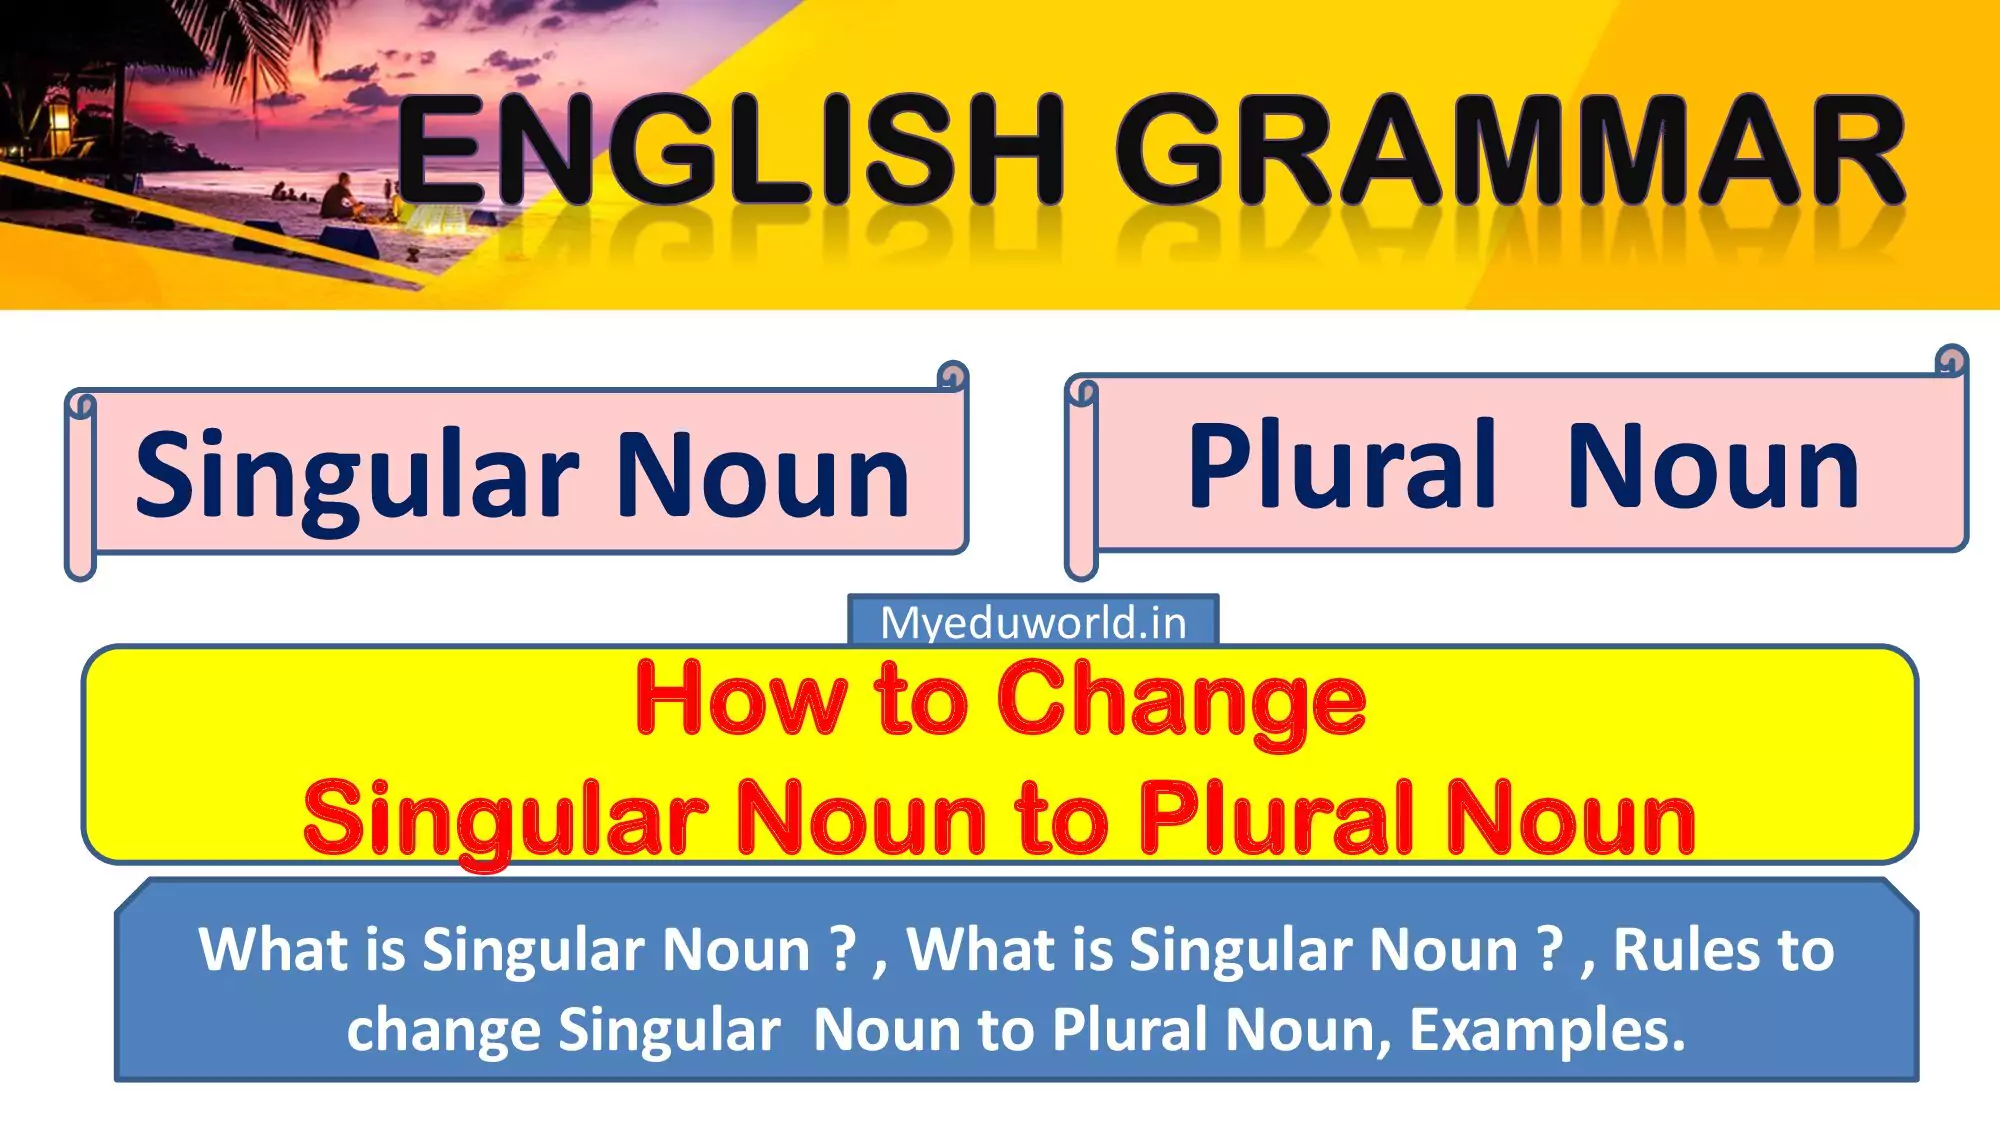 Singular Noun and Plural Noun | Rules to Change Singular Noun to Plural Noun